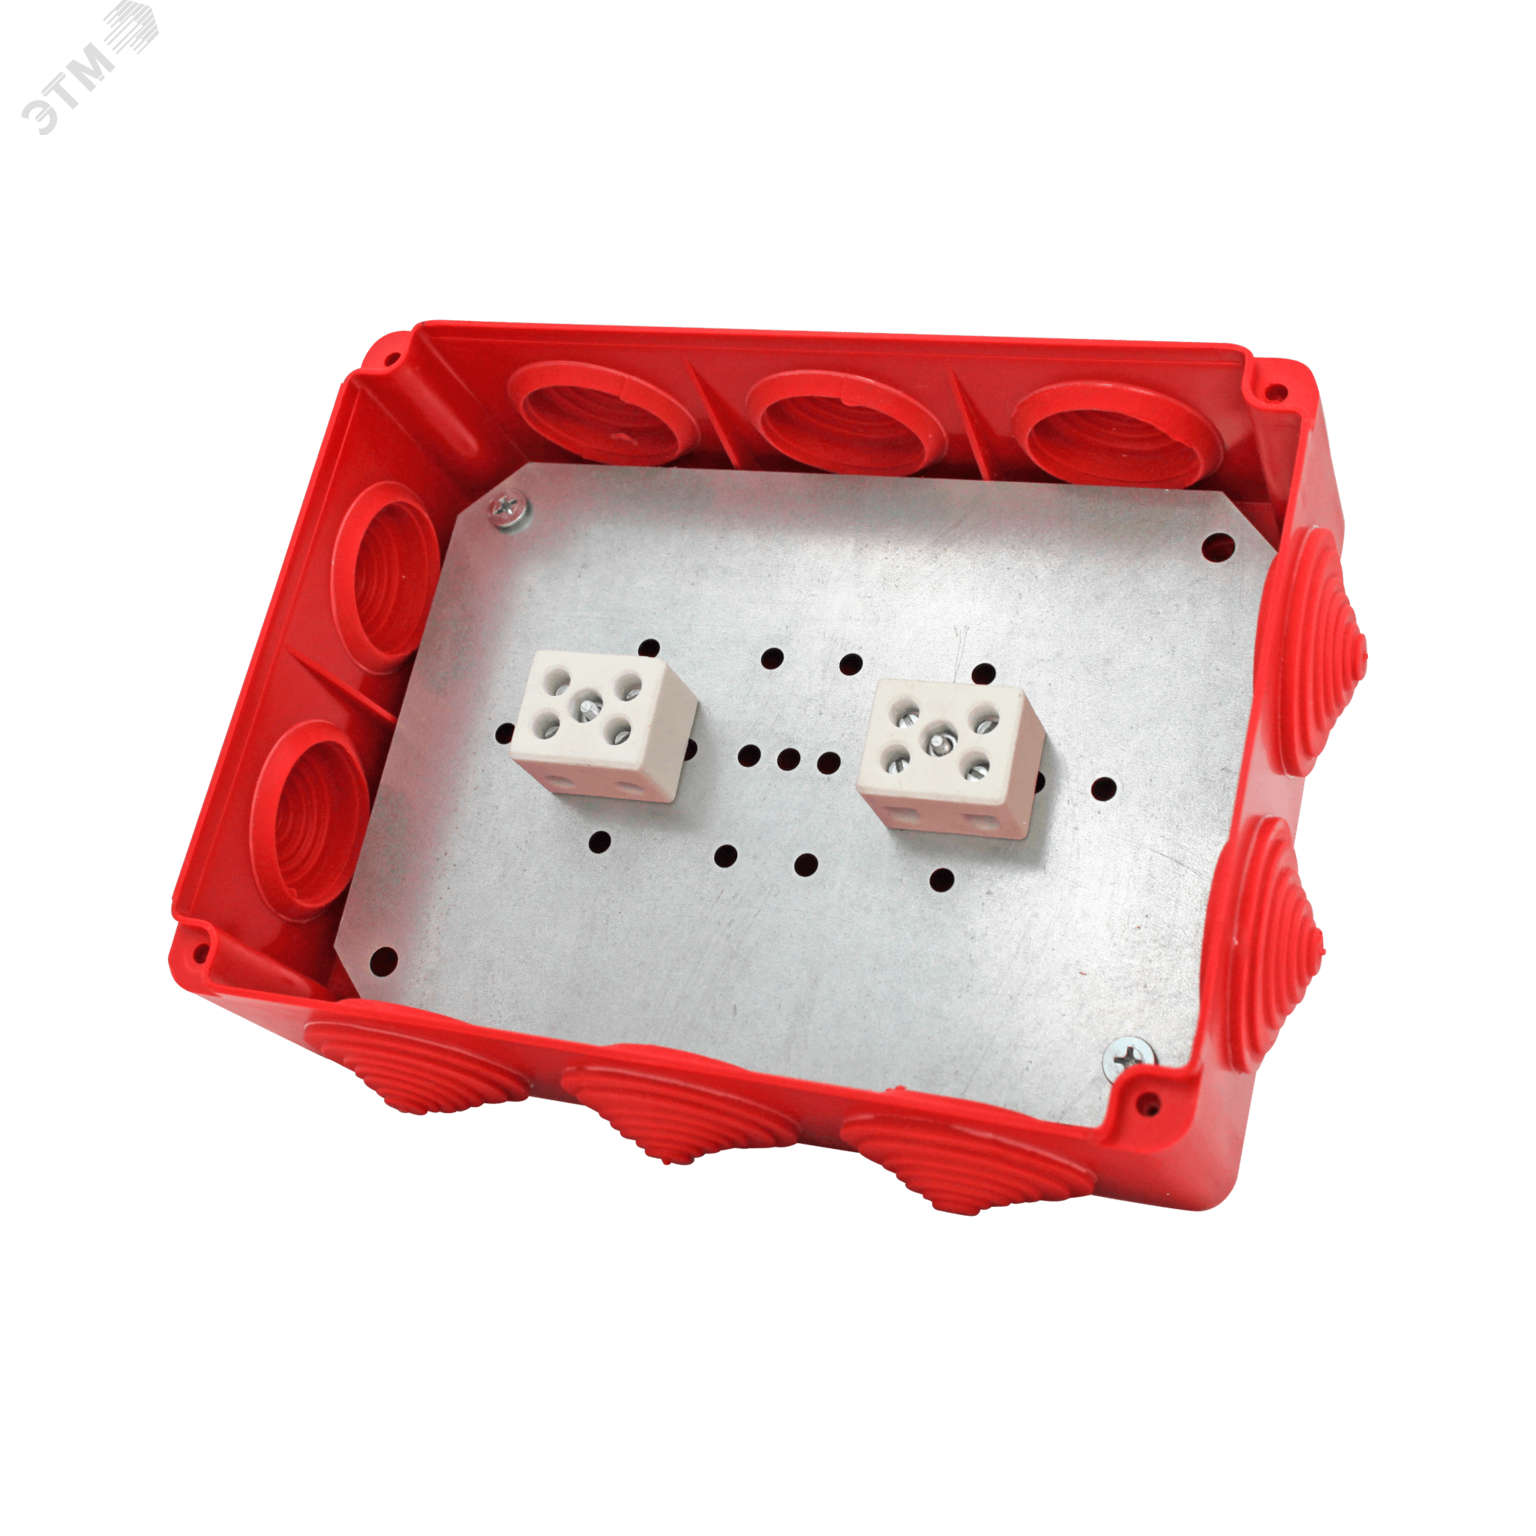 Коробка распределительная огнестойкая КРОПС-П5, IP54, габаритные размеры 190х140х70 мм, для кабелей сечением до 10 мм2, 8 клемм KR0145 КМ-Профиль - превью 3